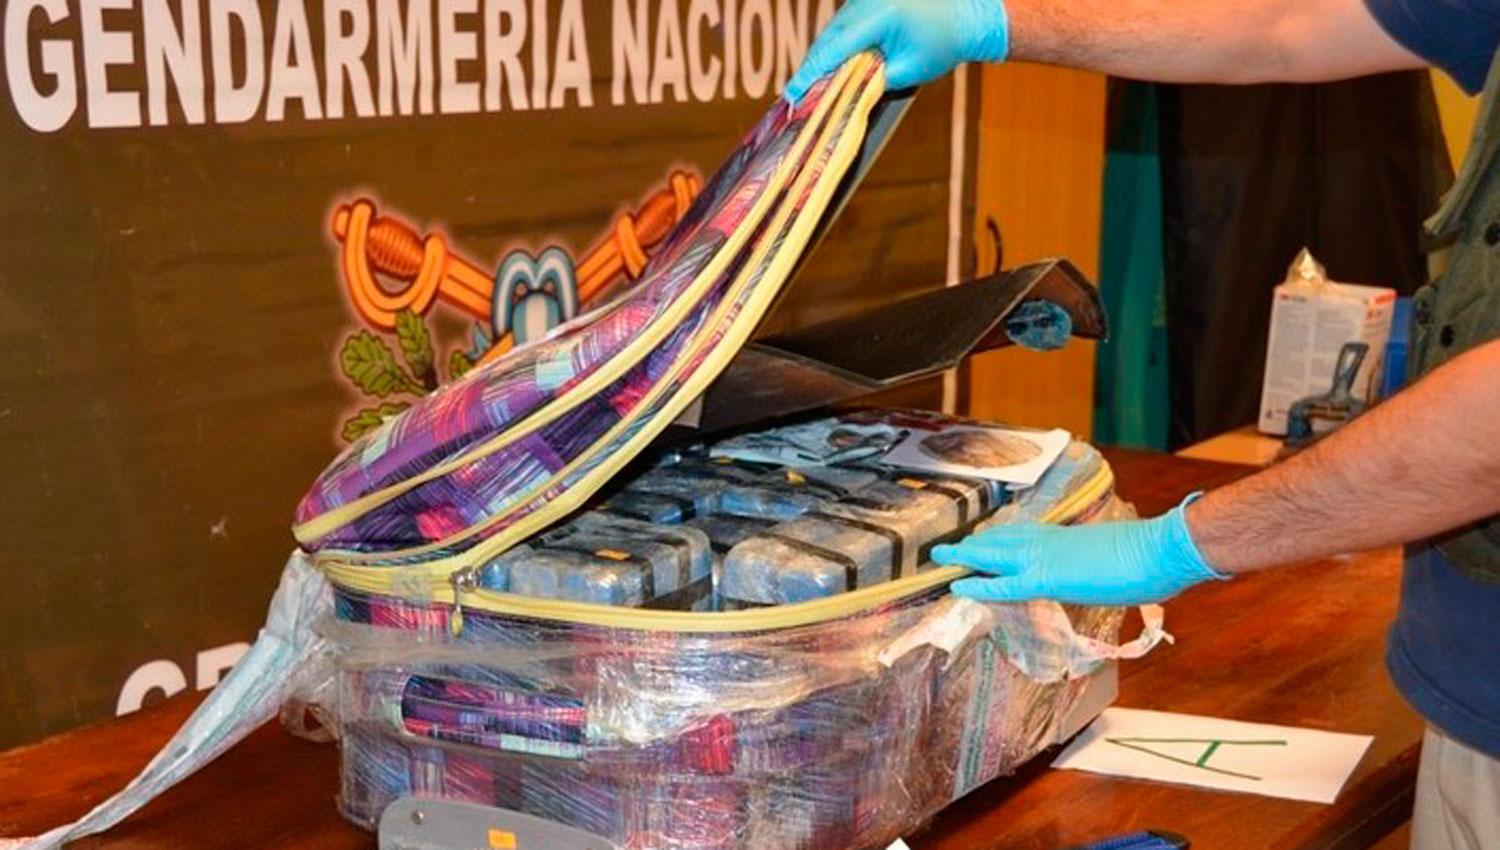 Encontraron casi 400 kilos de cocaína en la embajada rusa en Argentina en valijas diplomáticas. FOTO TOMADA DE CLARÍN.COM